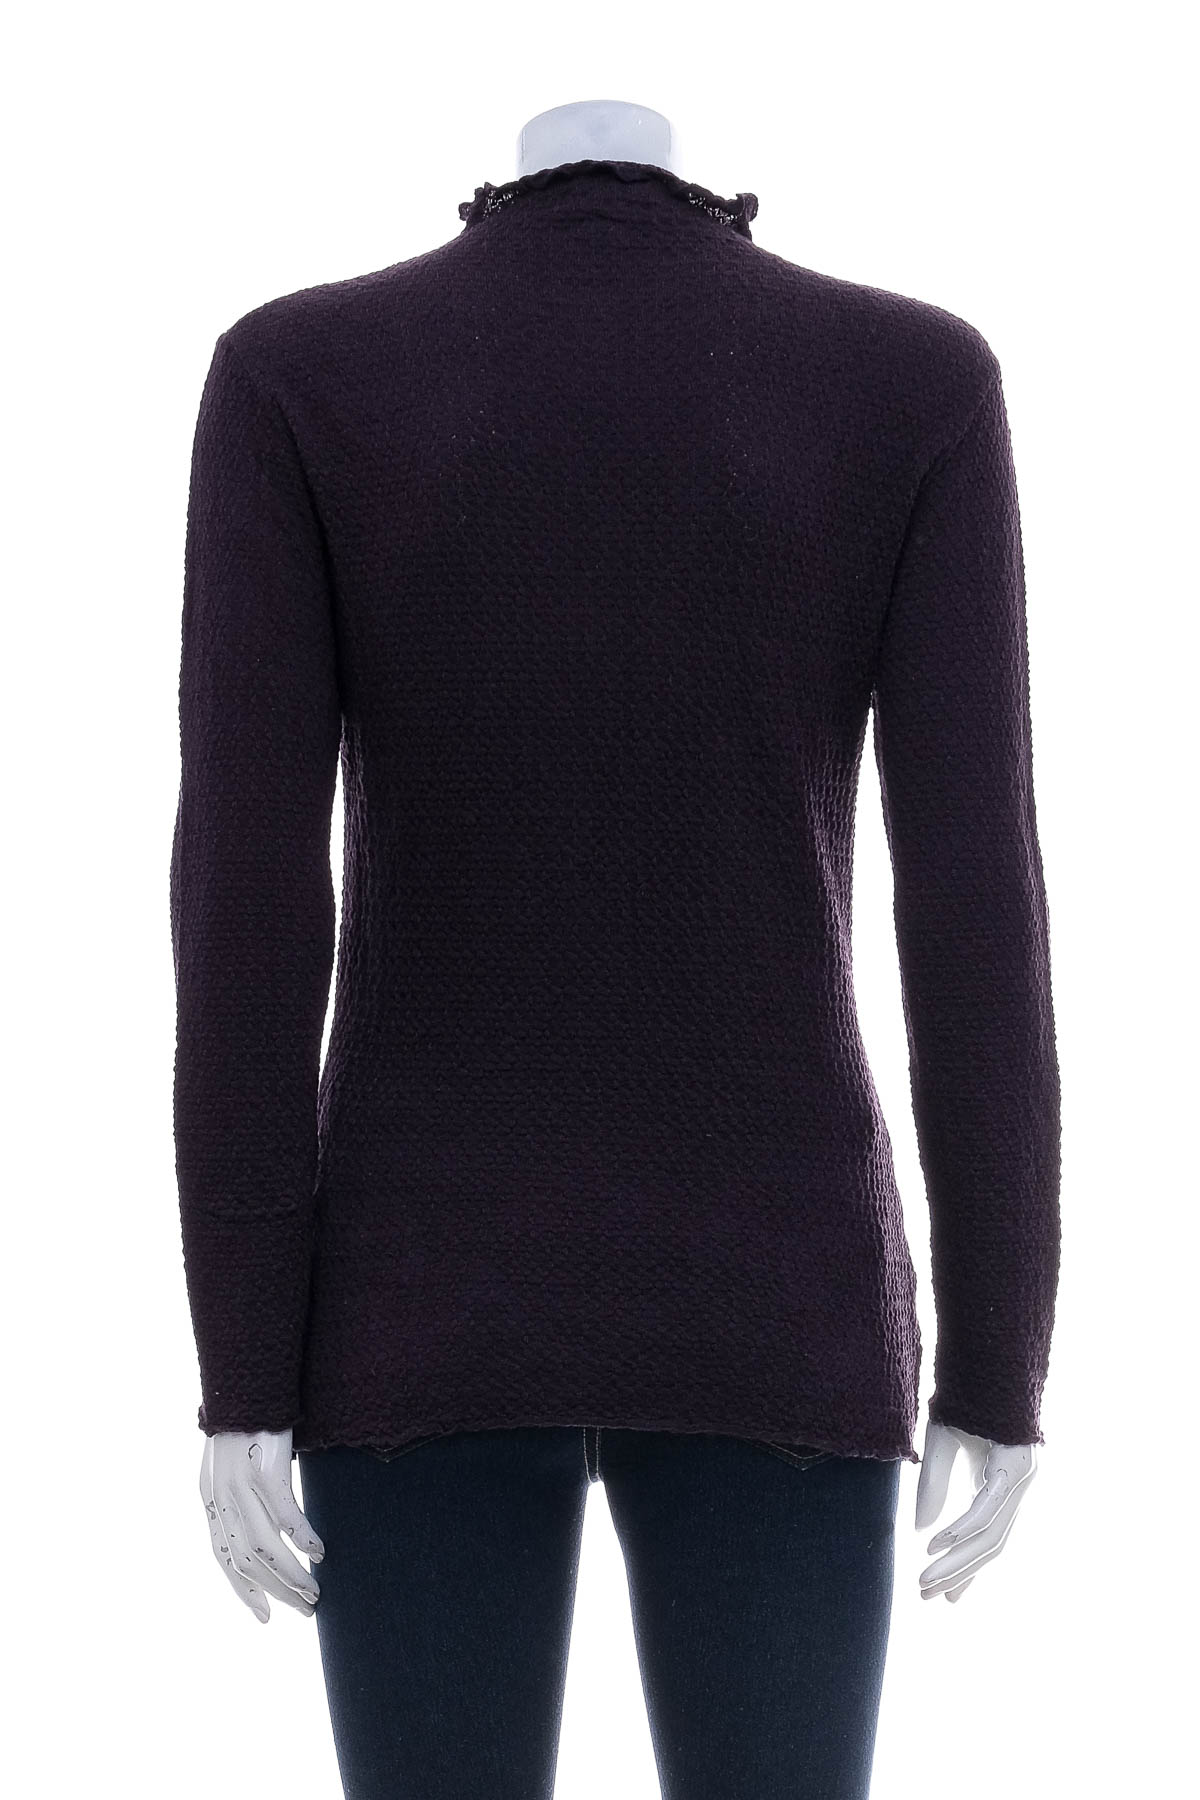 Women's sweater - Mary Grace - 1